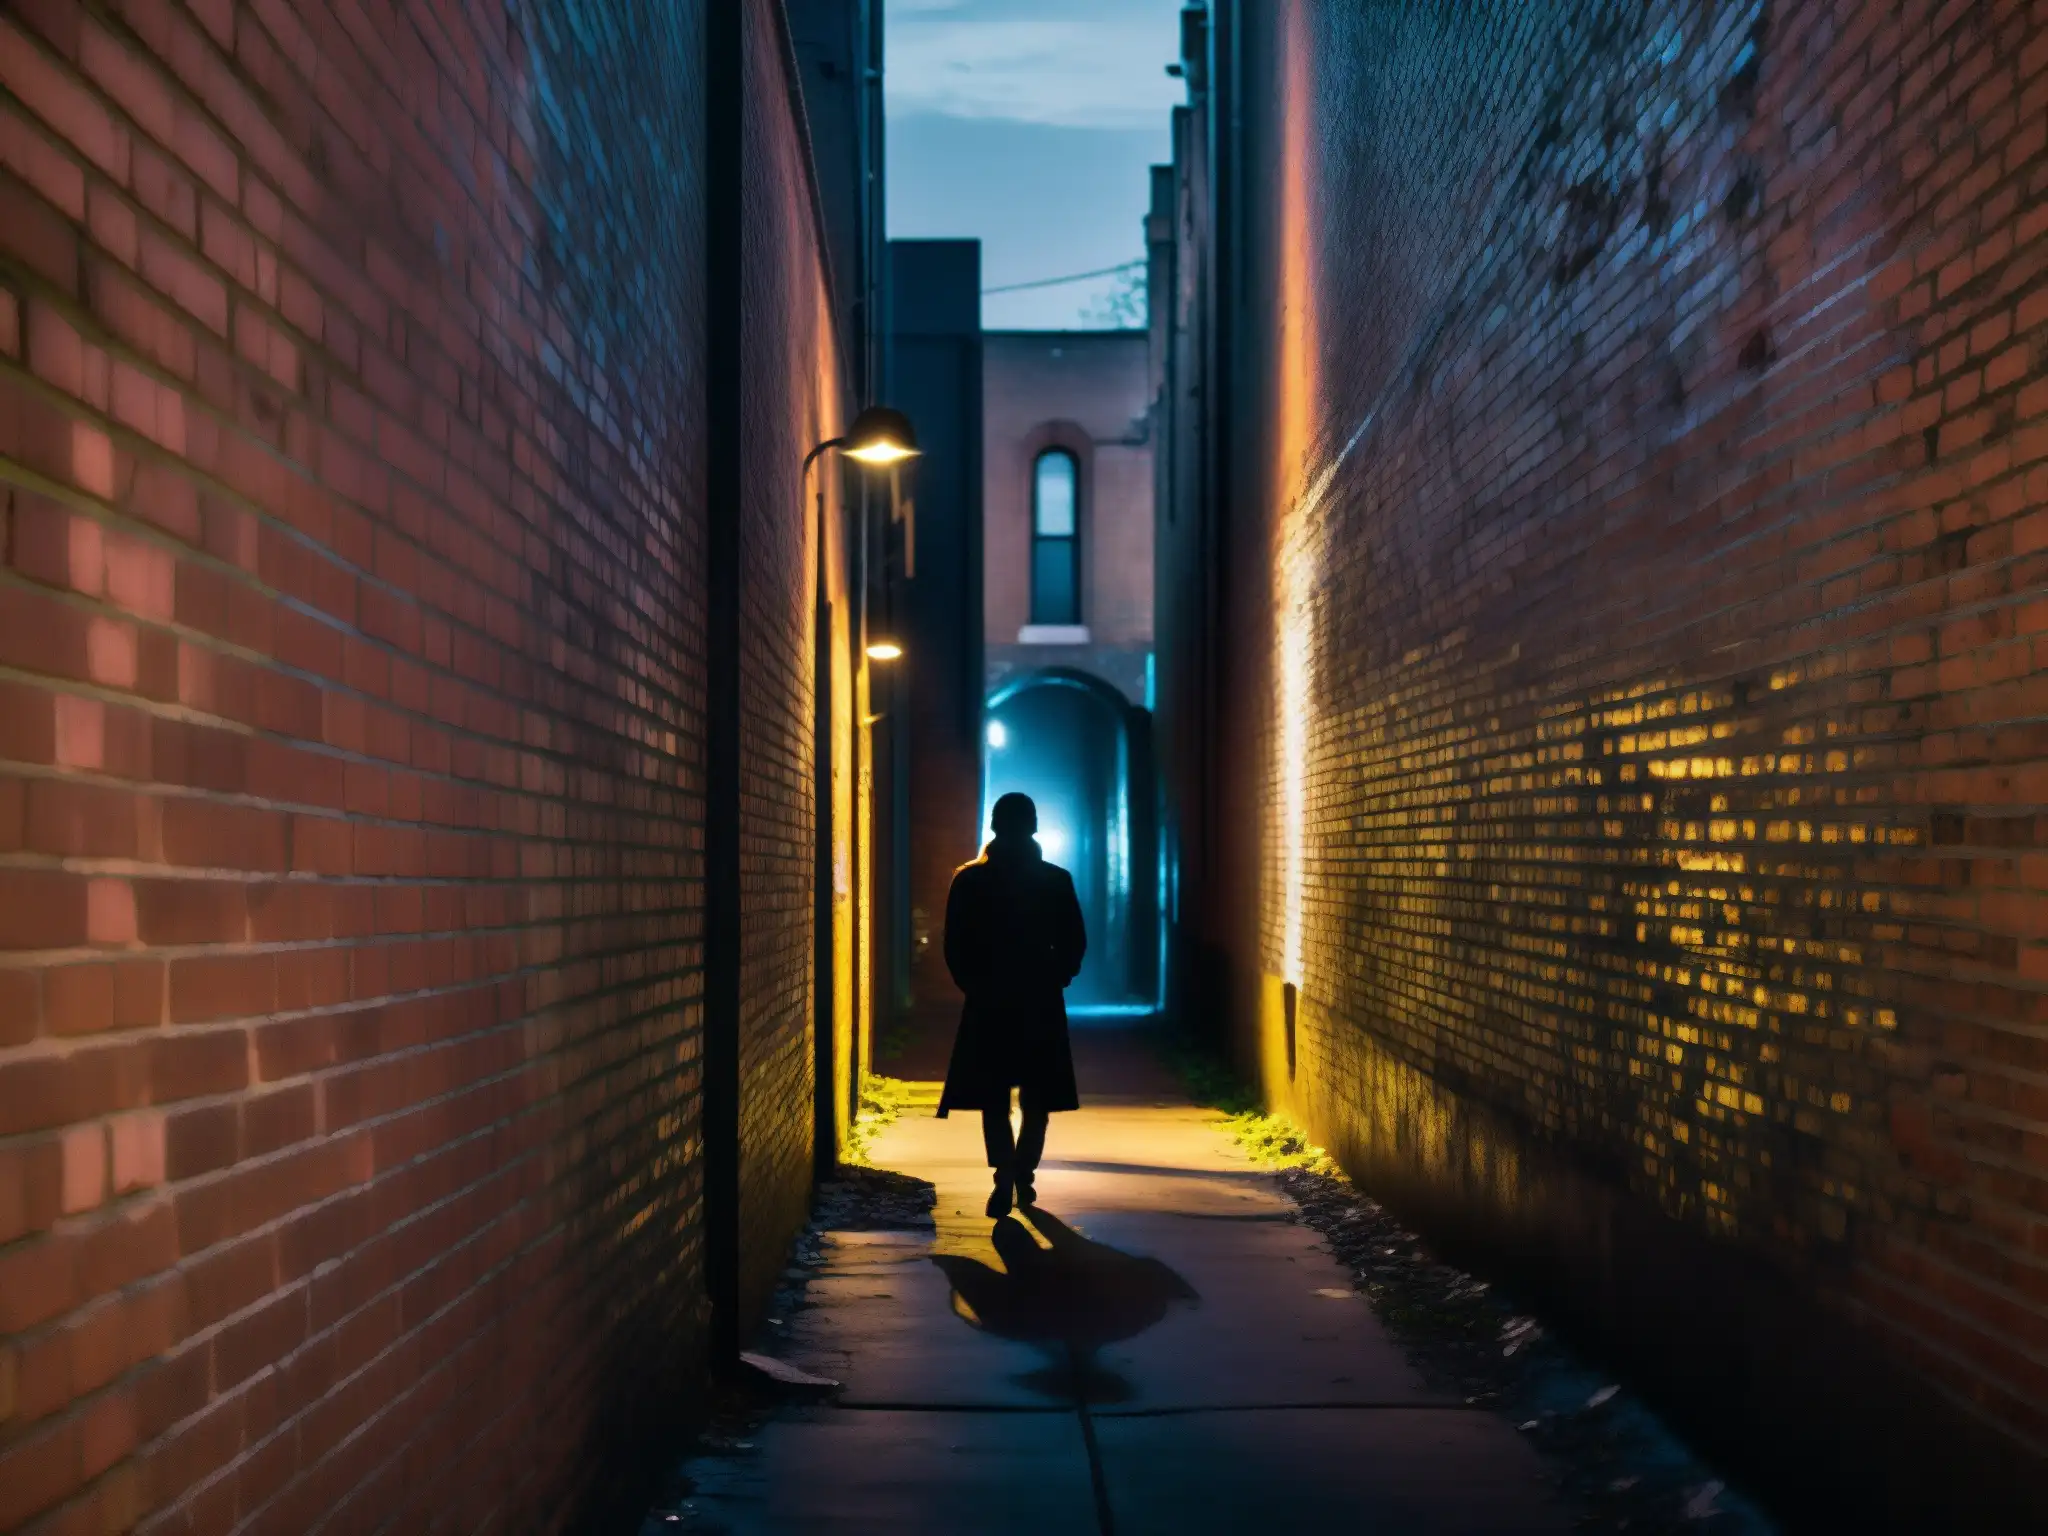 En la oscuridad del callejón, El Hombre Delgado acecha entre grafitis